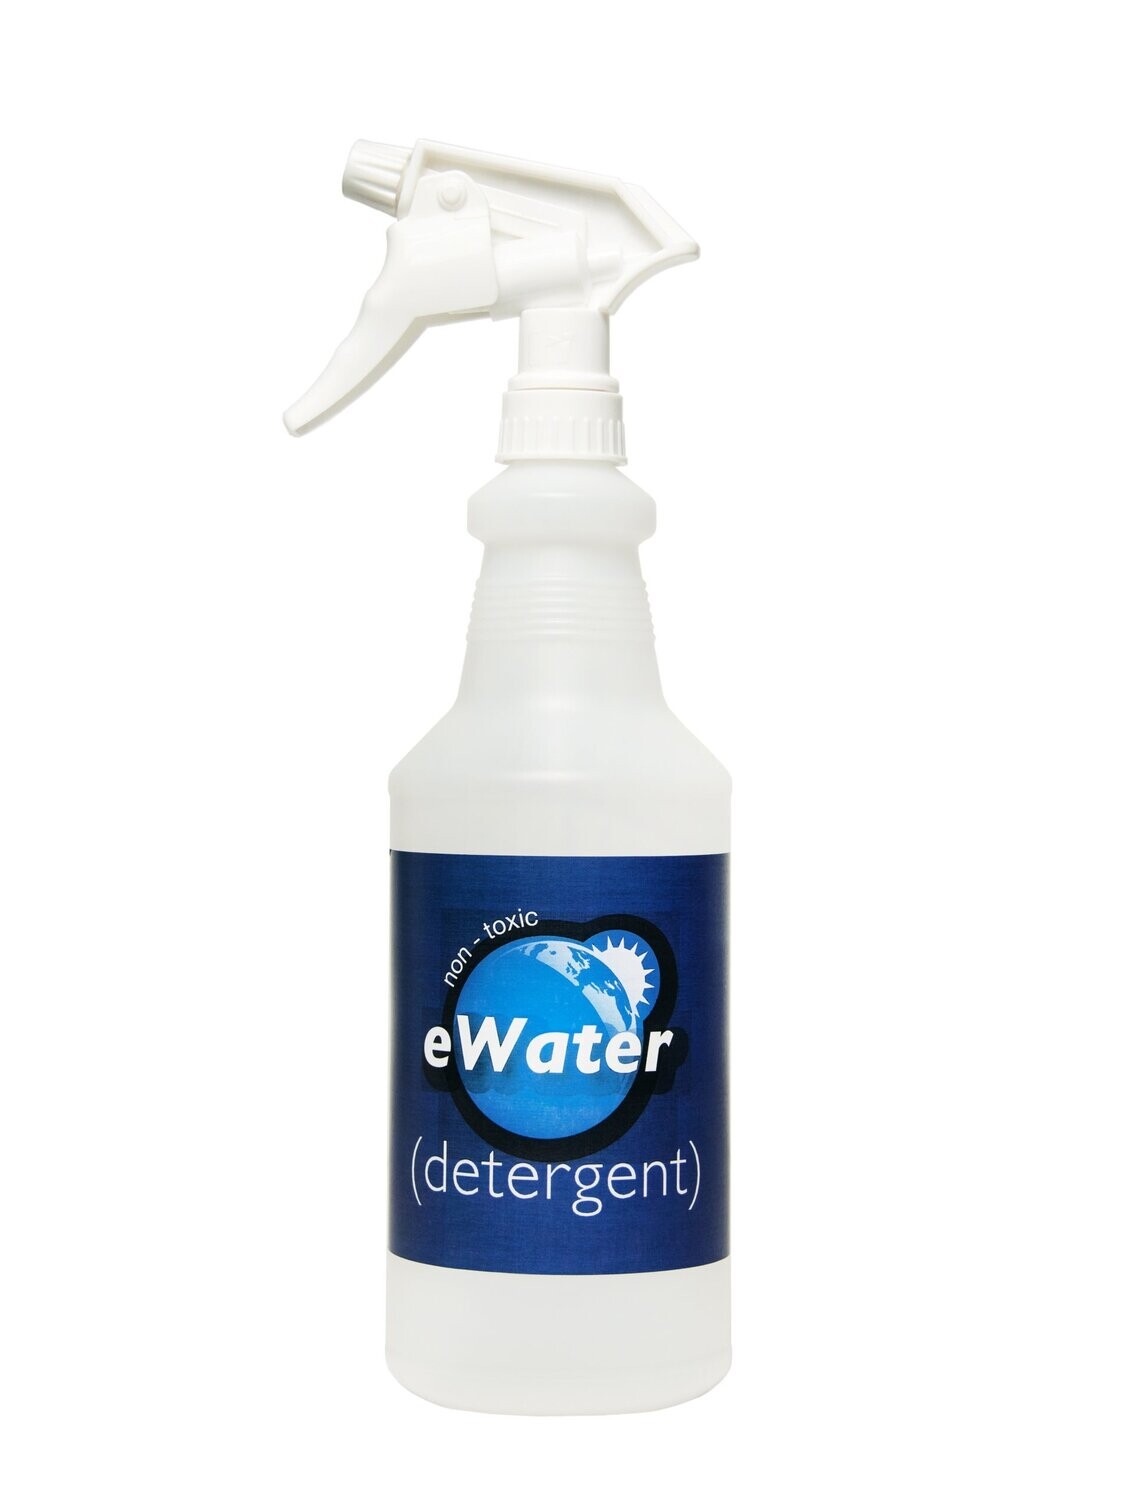 eWater Detergent